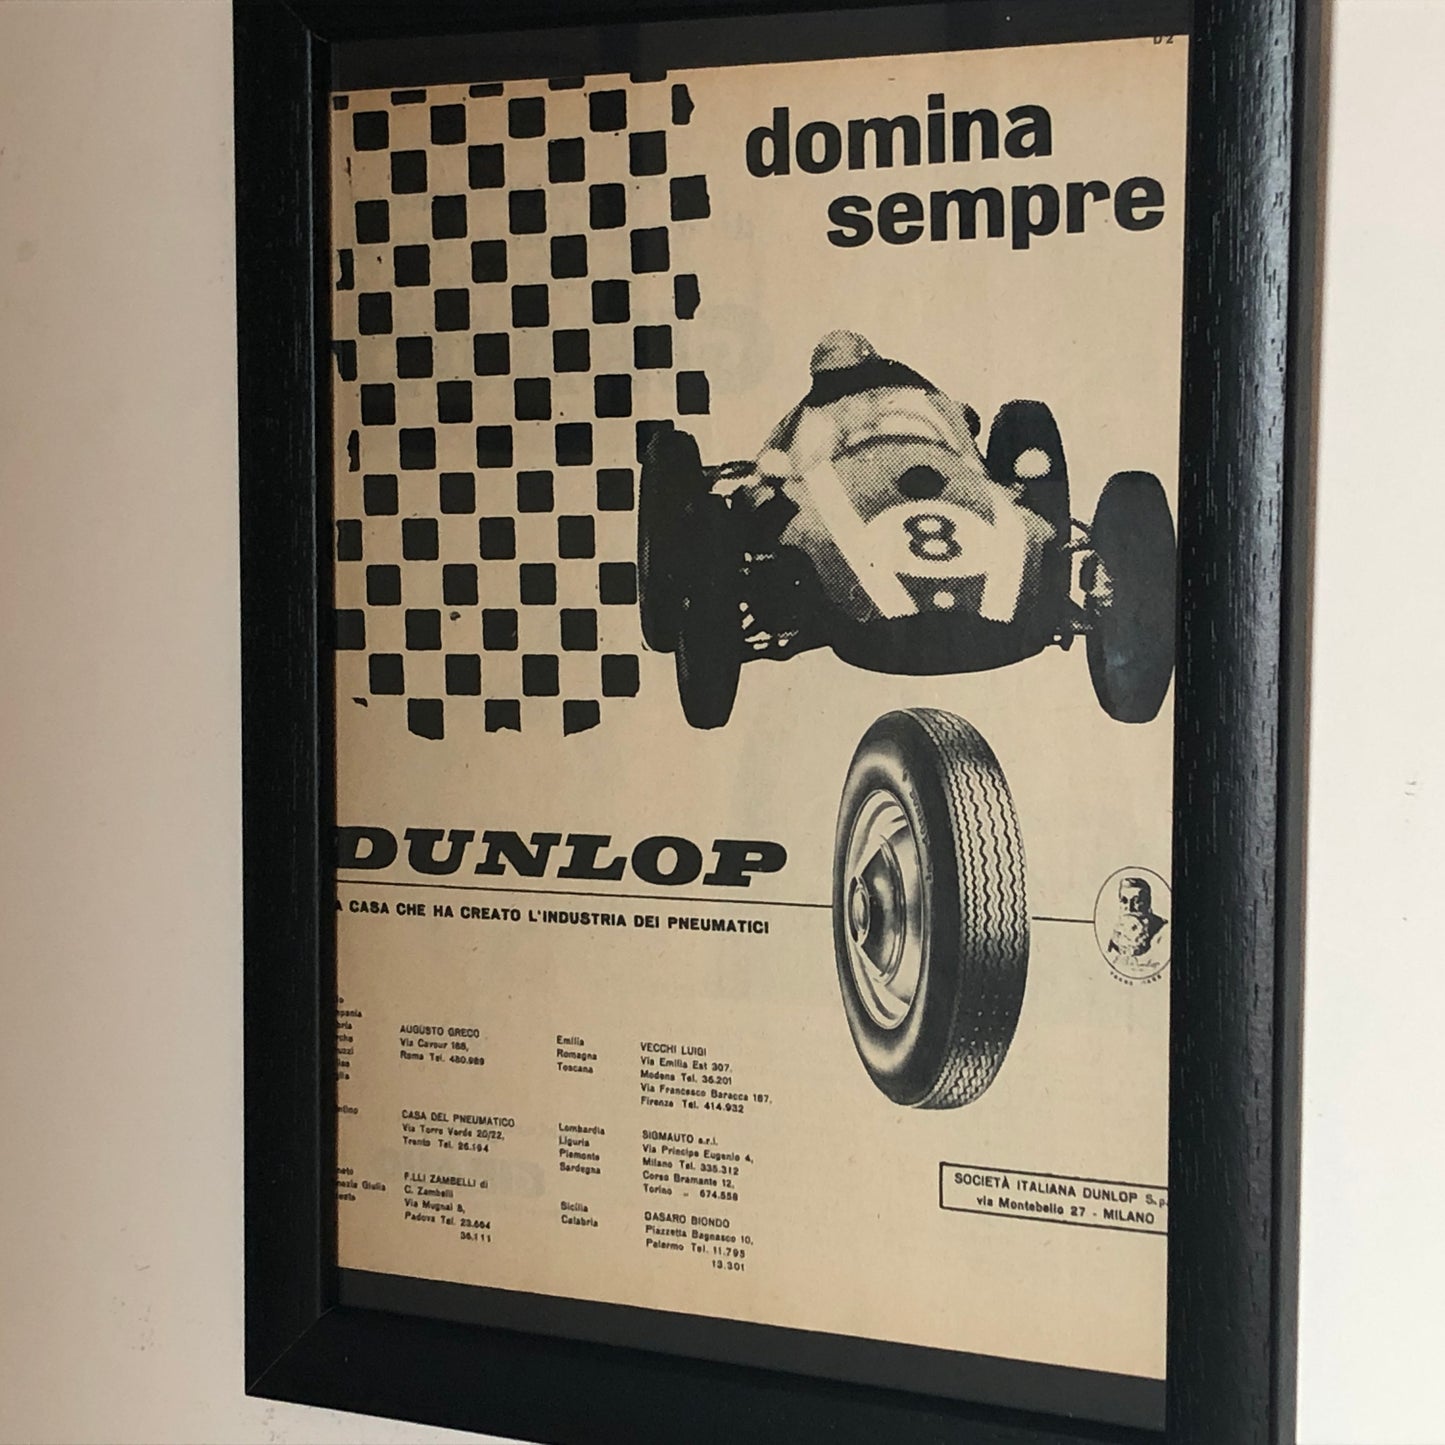 Dunlop, Advertising Year 1960 Dunlop Tires Always Dominates